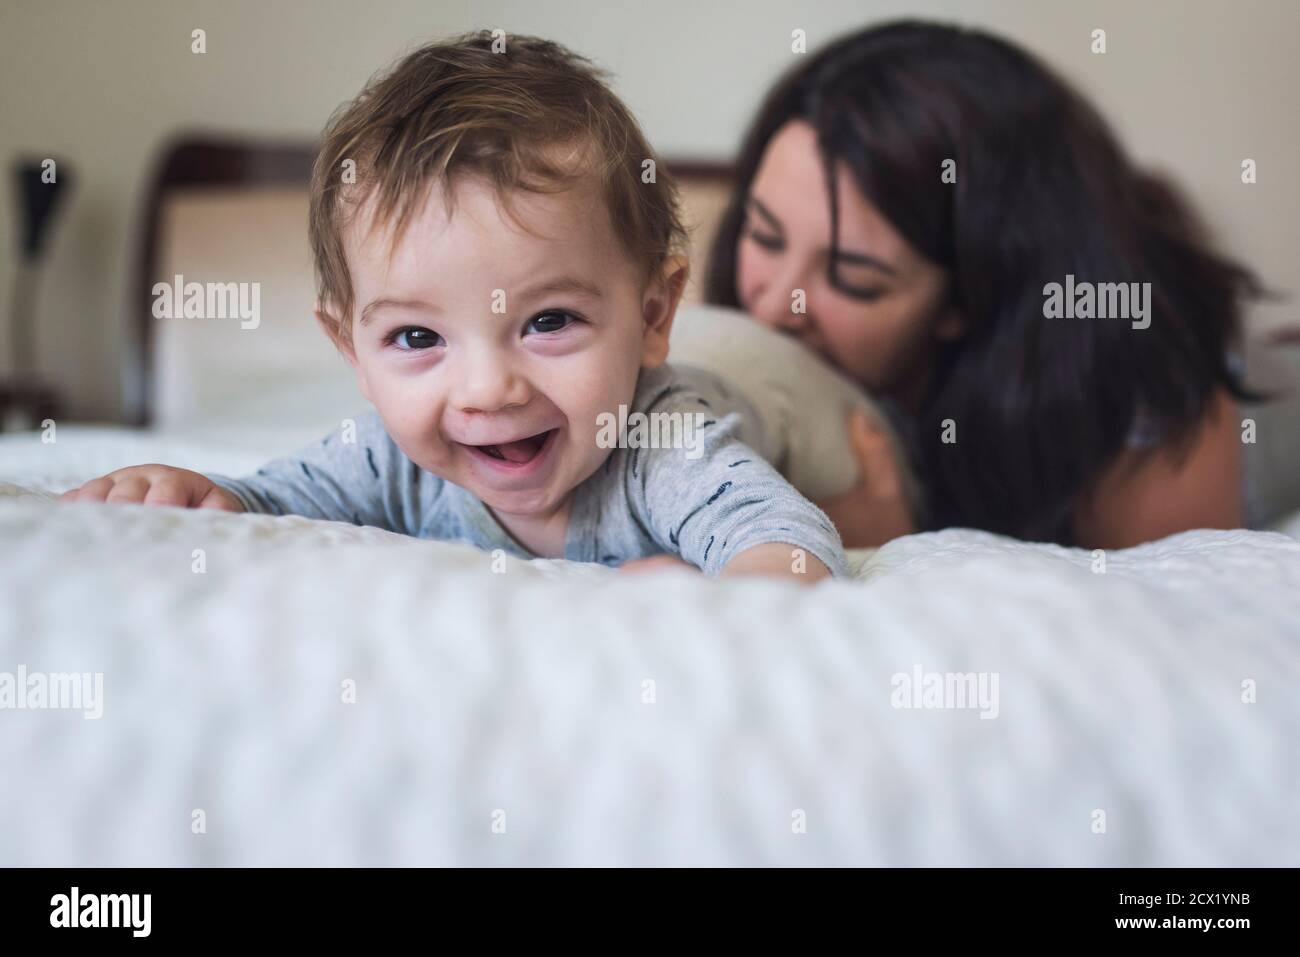 Lachend Jahr altes Baby auf dem Bauch auf dem Bett mit verspielt Mutter Mitte der 30er Jahre Stockfoto